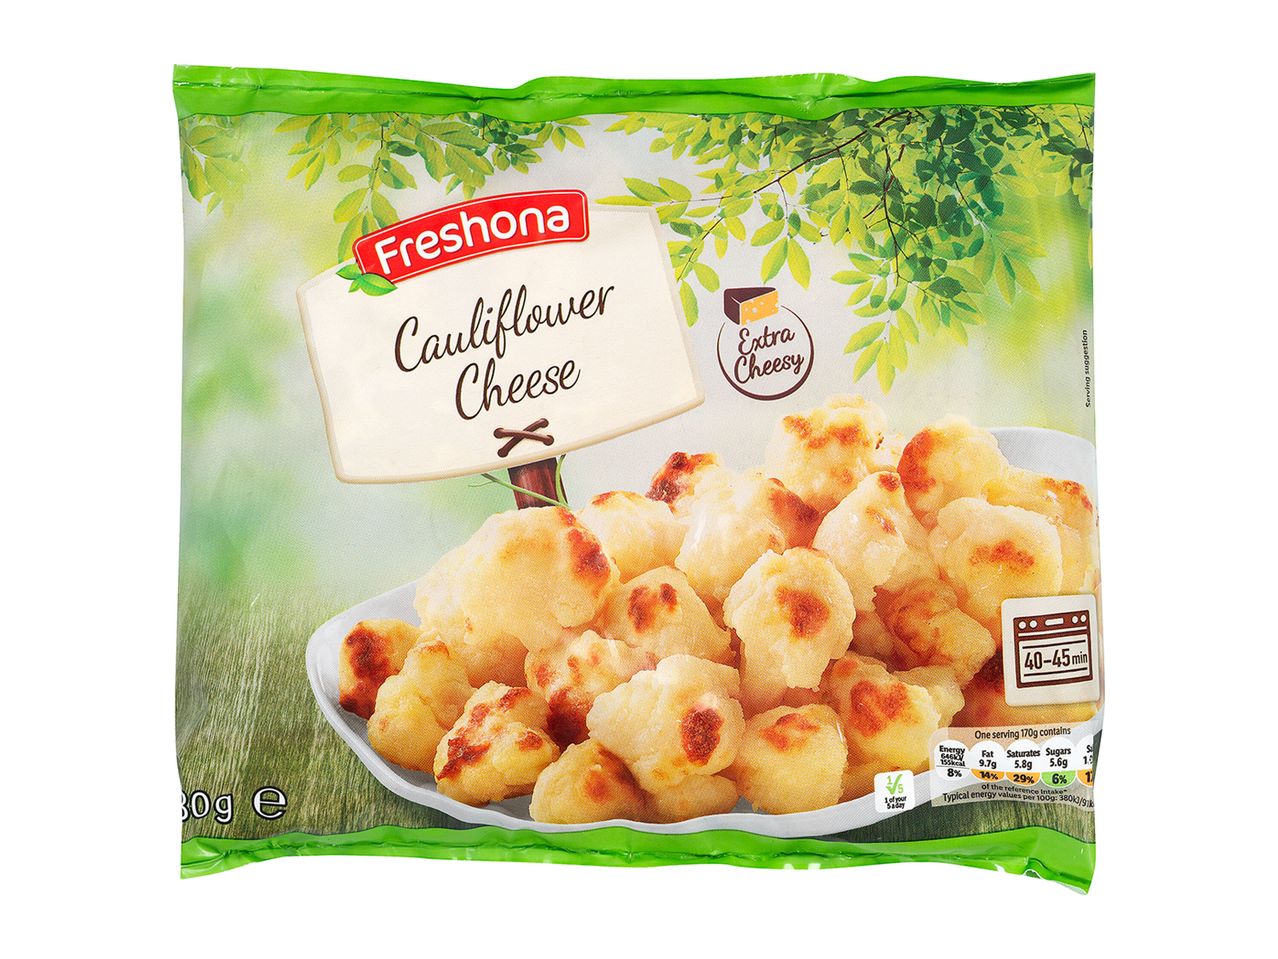 Go to full screen view: Freshona Cauliflower Cheese - Image 1